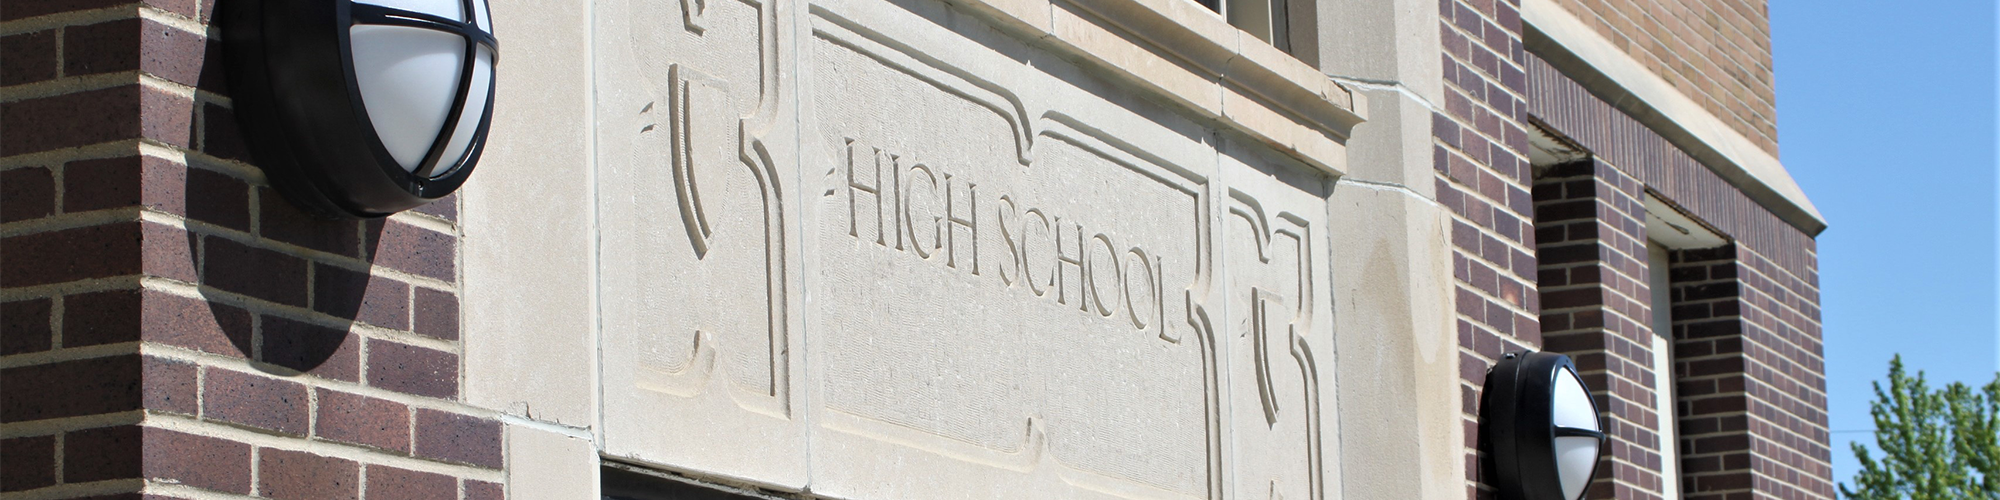 High School Doorway